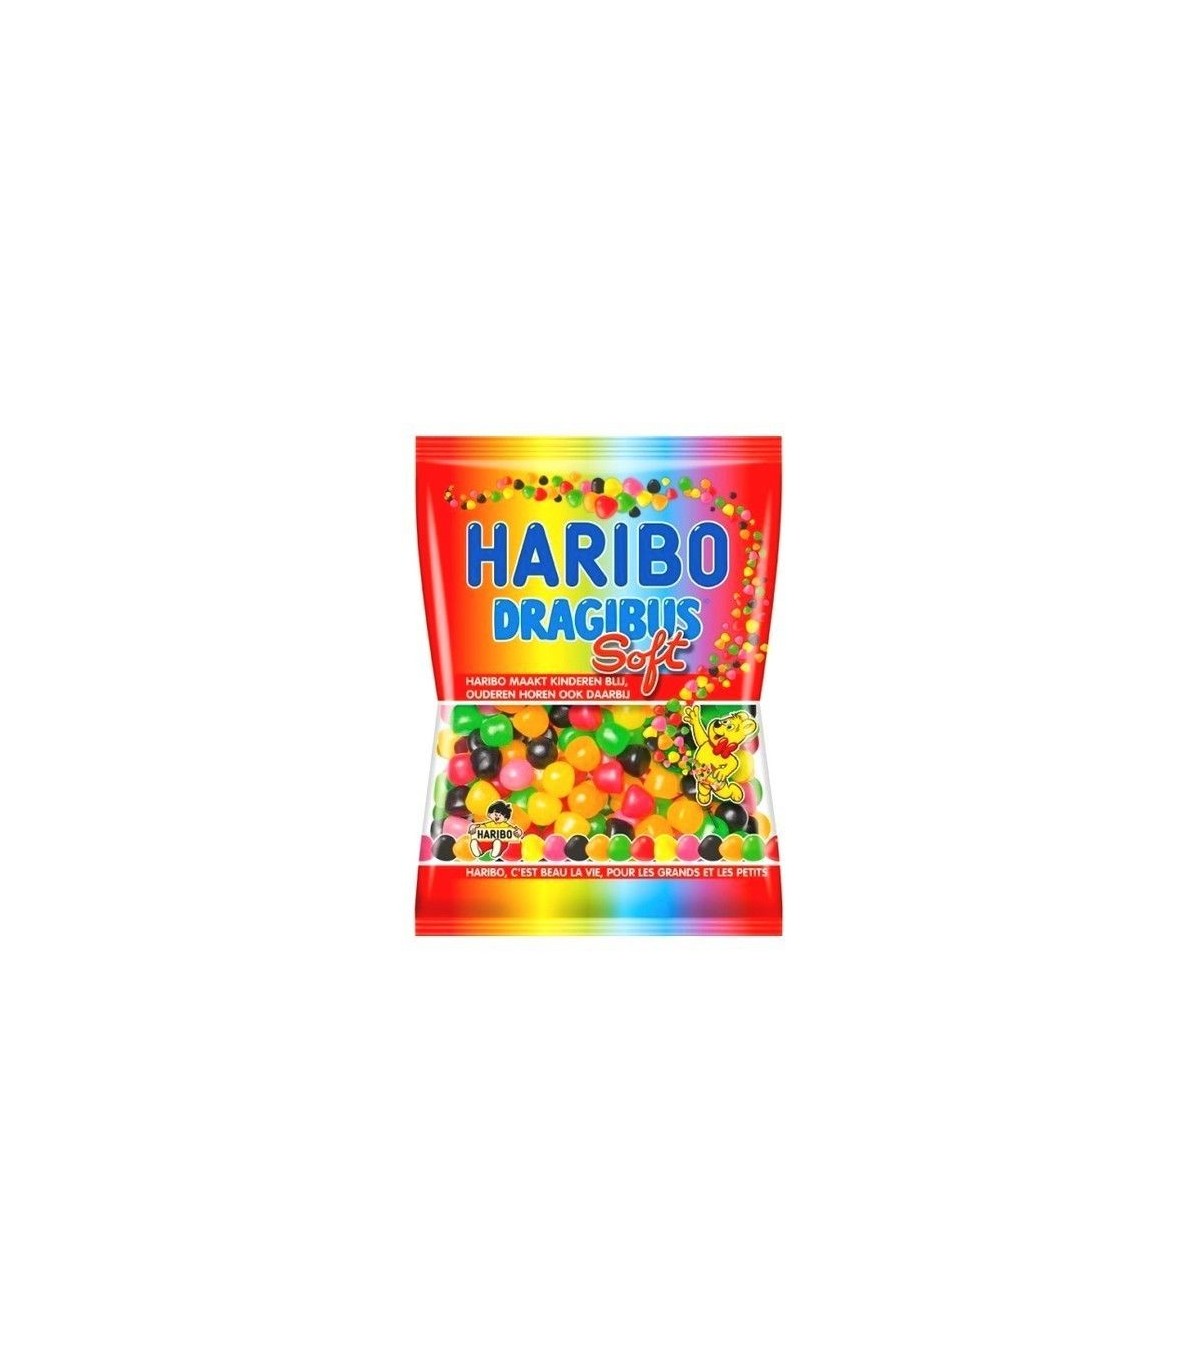 Dragibus Haribo, les délicieux bonbons billes de toutes les couleurs